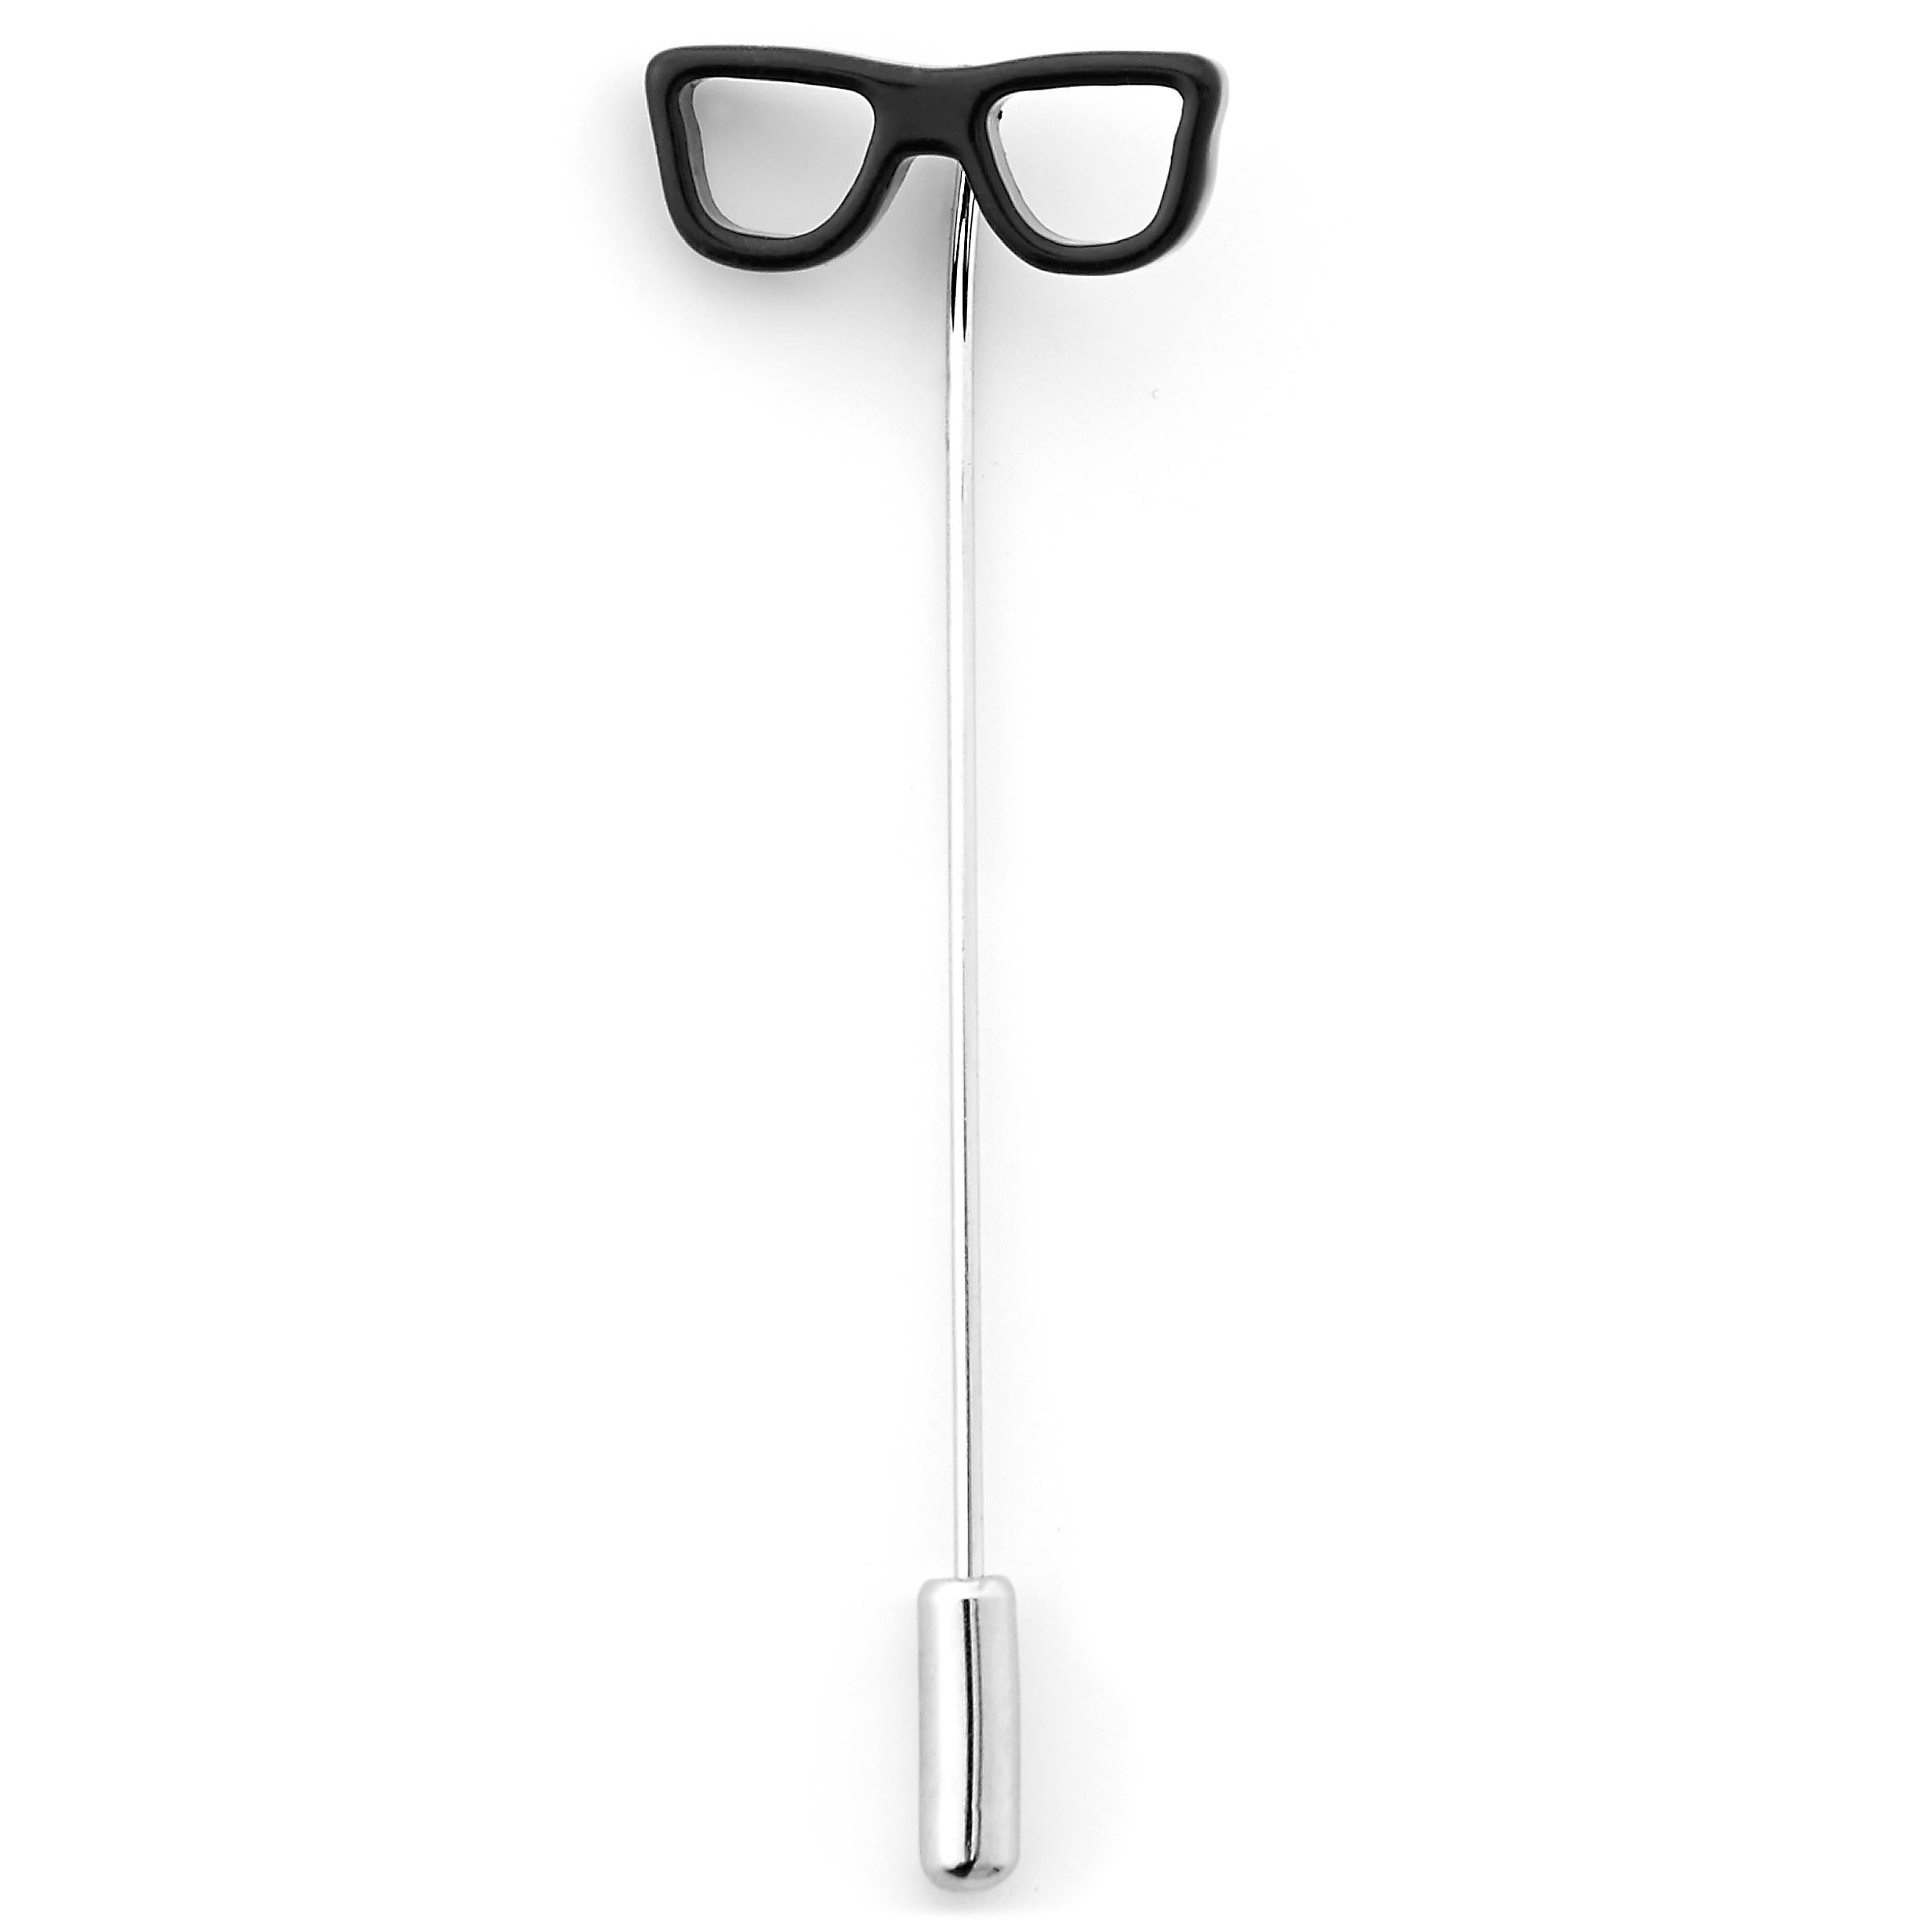 Black Nerdy Glasses Lapel Pin